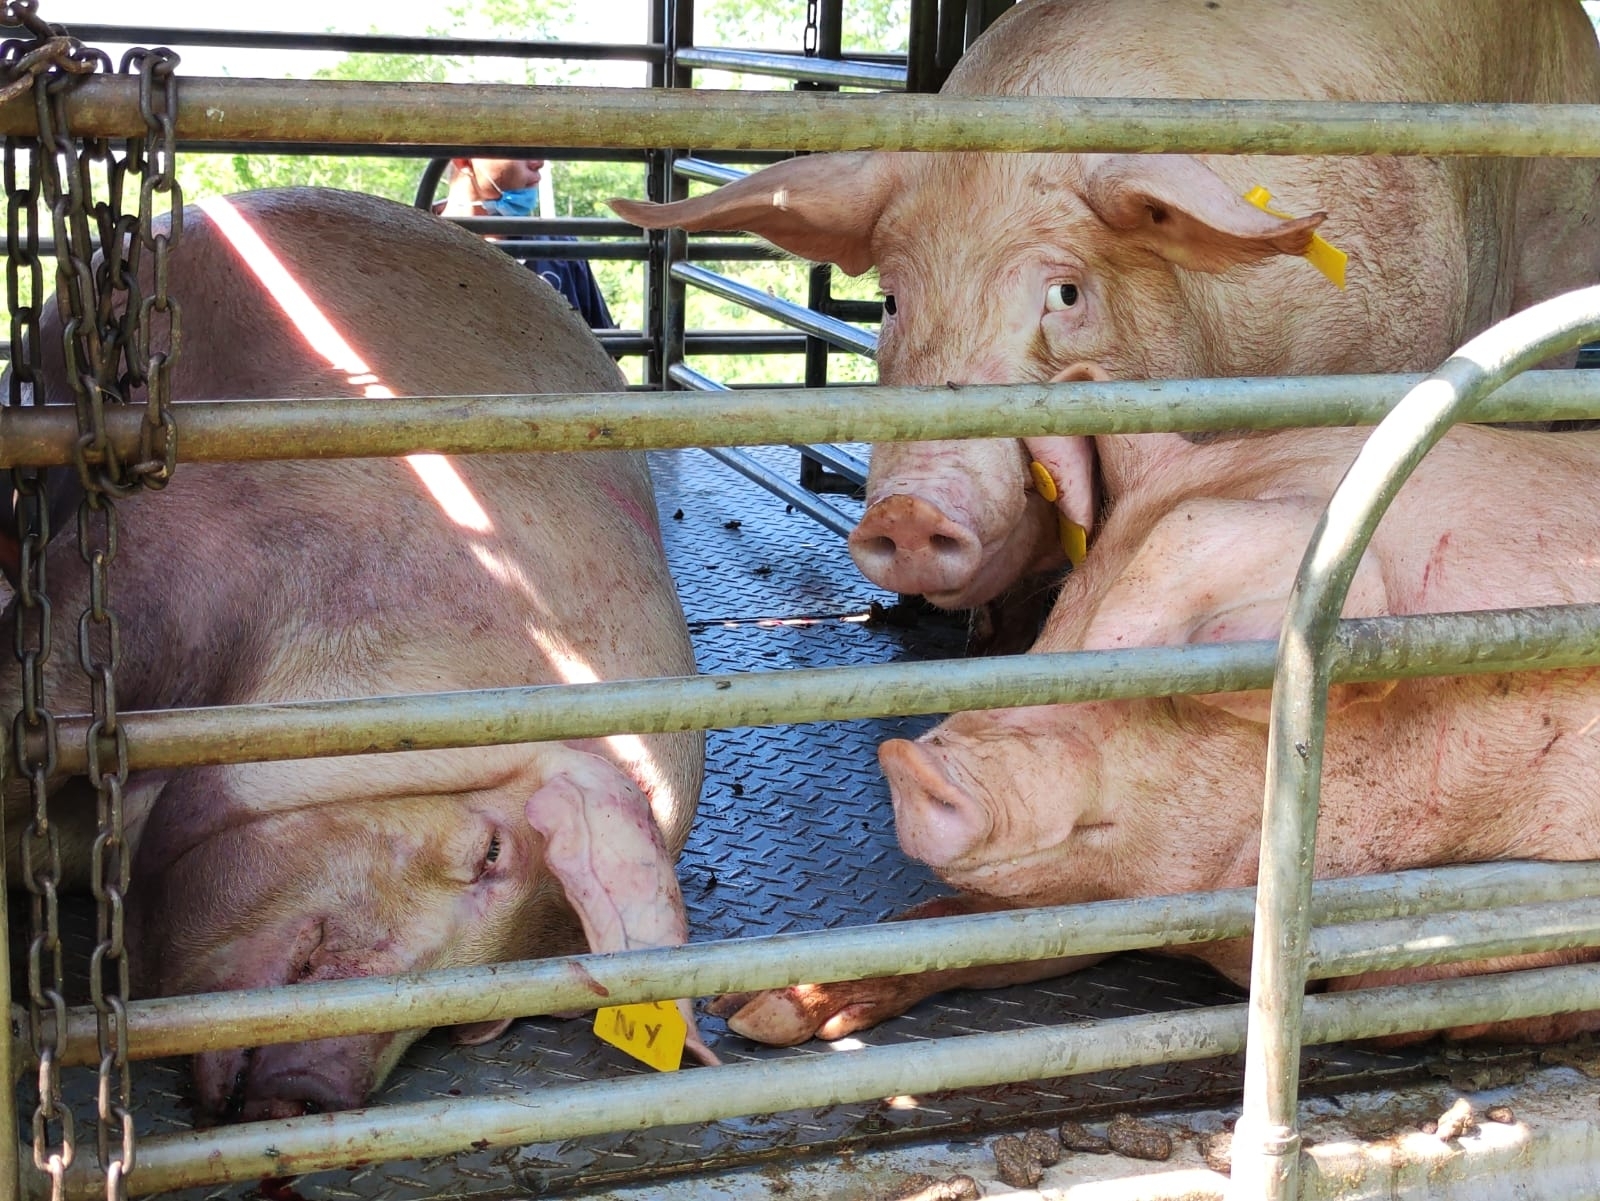 Causan megagranjas hambruna

Cría masiva de cerdos rompe cadena de producción de alimentos, advierten en Biosphera

Expertos coincidieron, durante el foro Biosphera, en que fábricas de cerdos dañan ecosistemas.
Las plantas porcícolas locales deben ser investigadas, dice la WWF